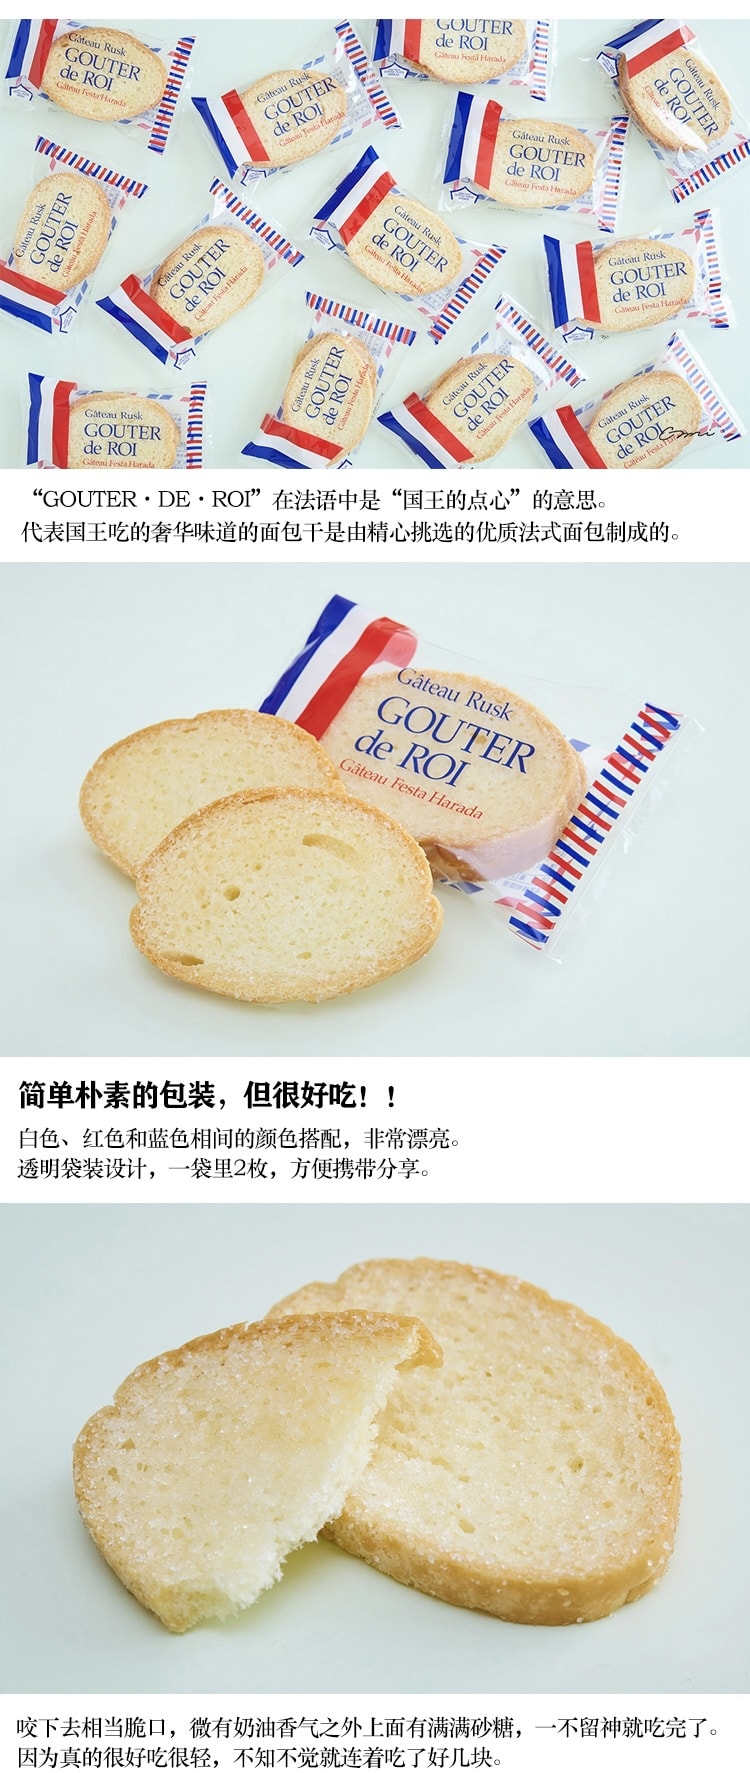 【日本直邮】GATEAU FESTA HARADA  法国 黄油烤面包片  原味 26枚装